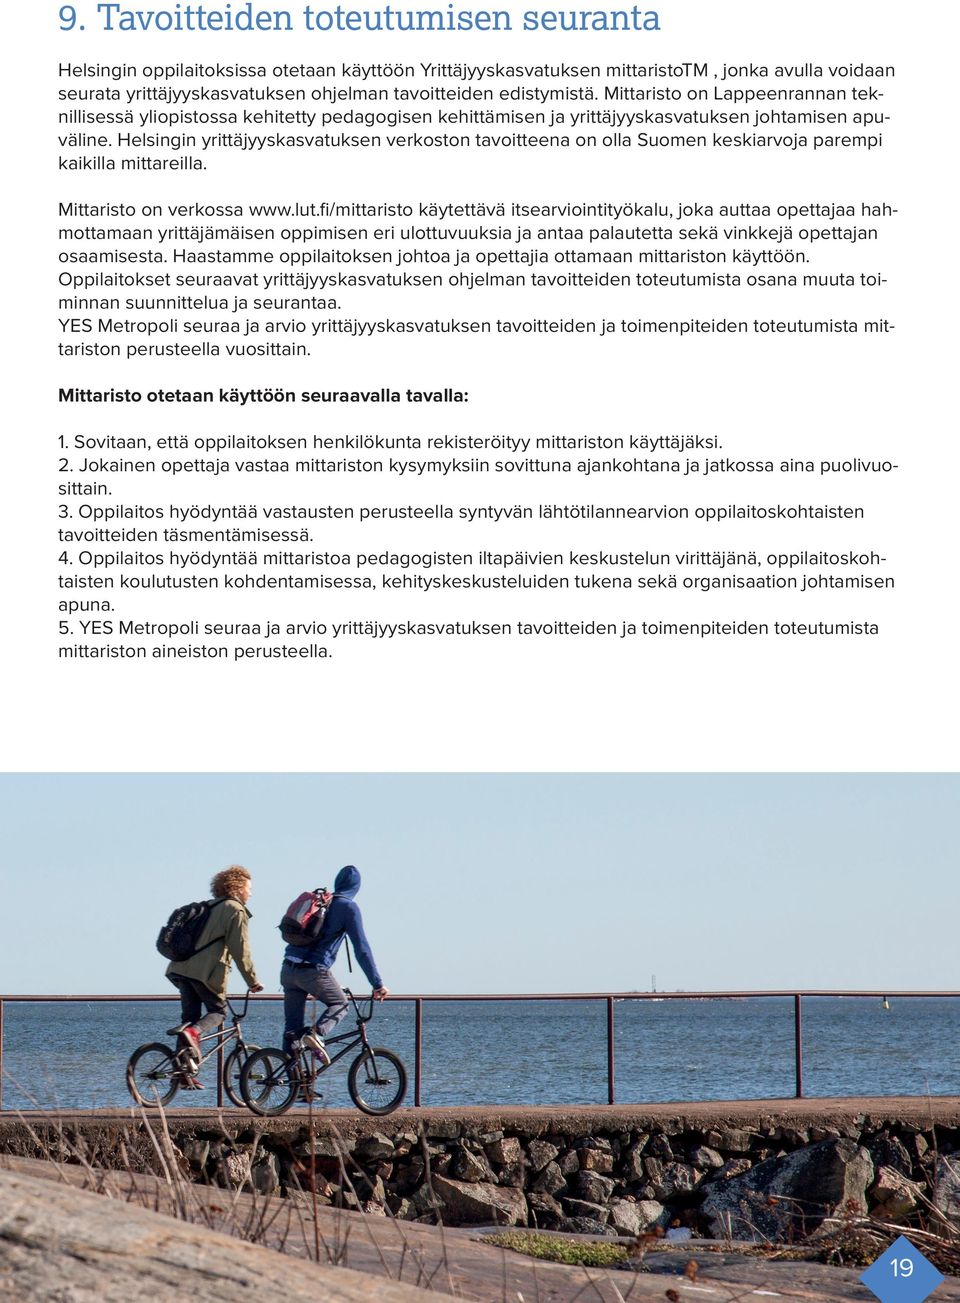 Helsingin yrittäjyyskasvatuksen verkoston tavoitteena on olla Suomen keskiarvoja parempi kaikilla mittareilla. Mittaristo on verkossa www.lut.